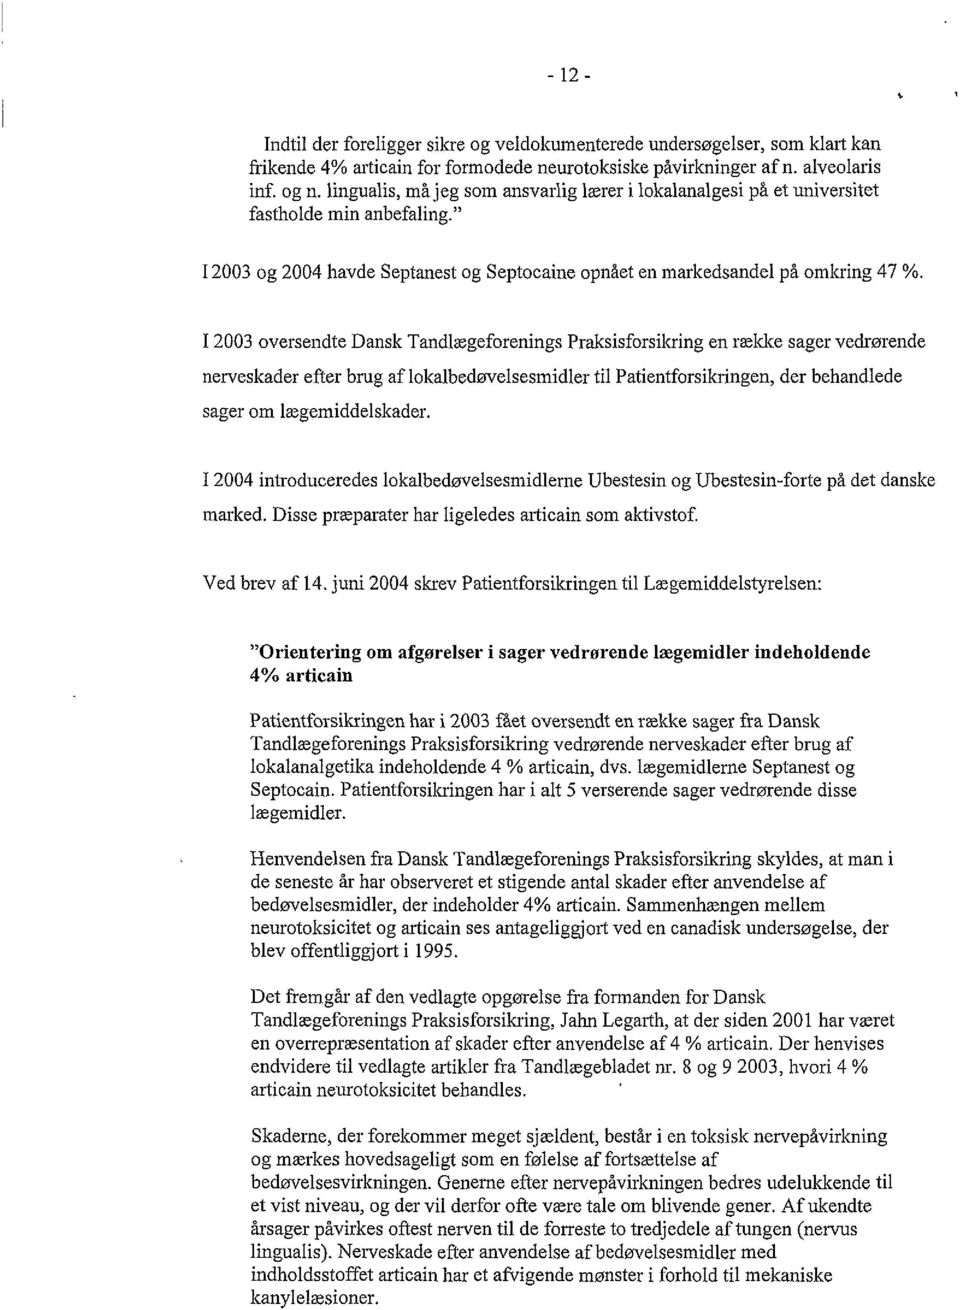 12003 oversendte Dansk Tandlægeforenings Praksisforsikring en række sager vedrørende nerveskader efter brug af lokalbedøvelsesmidler til Patientforsikringen, der behandlede sager om lægemiddel skader.